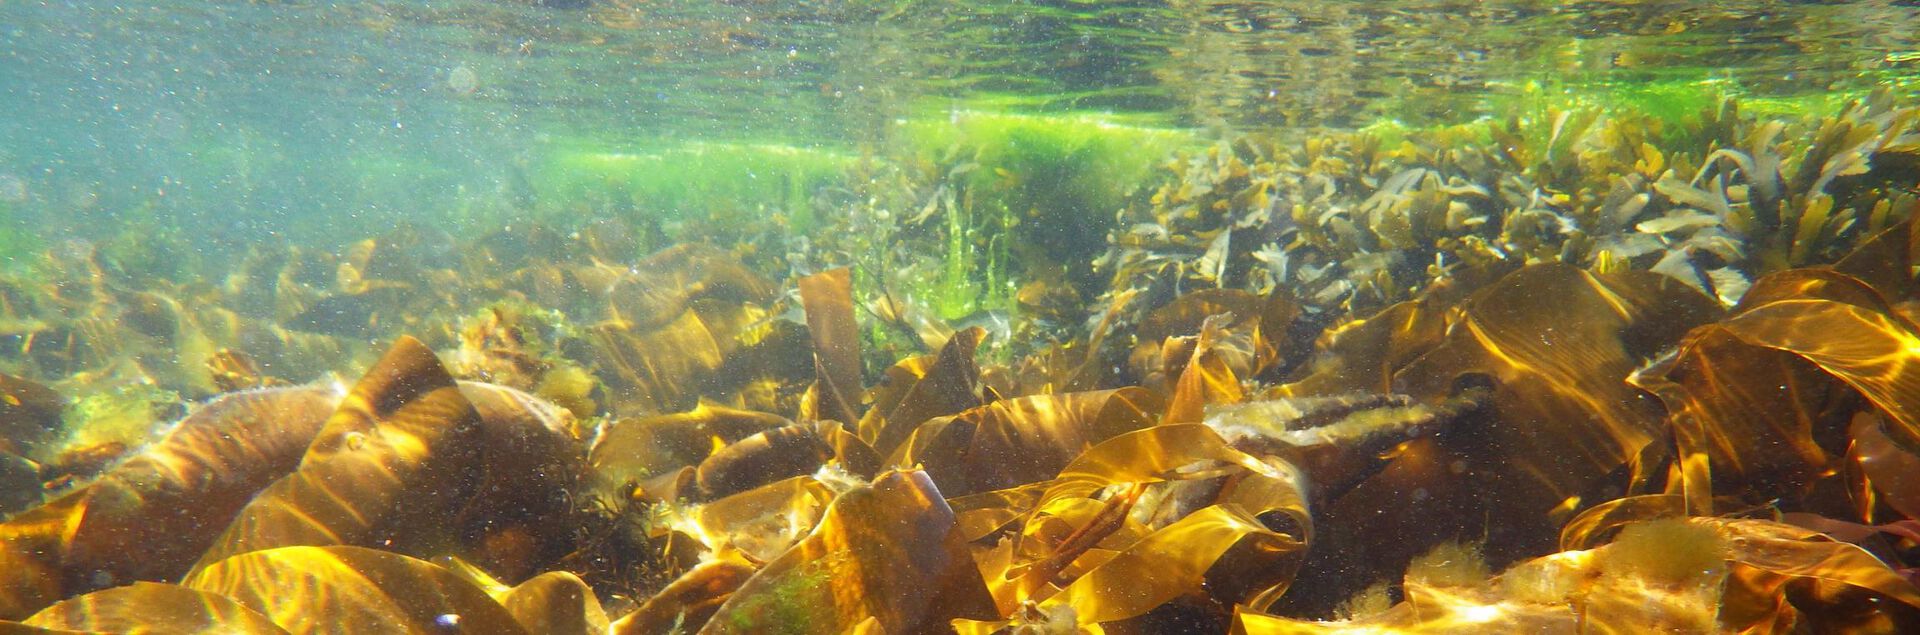 Kelp forest under water